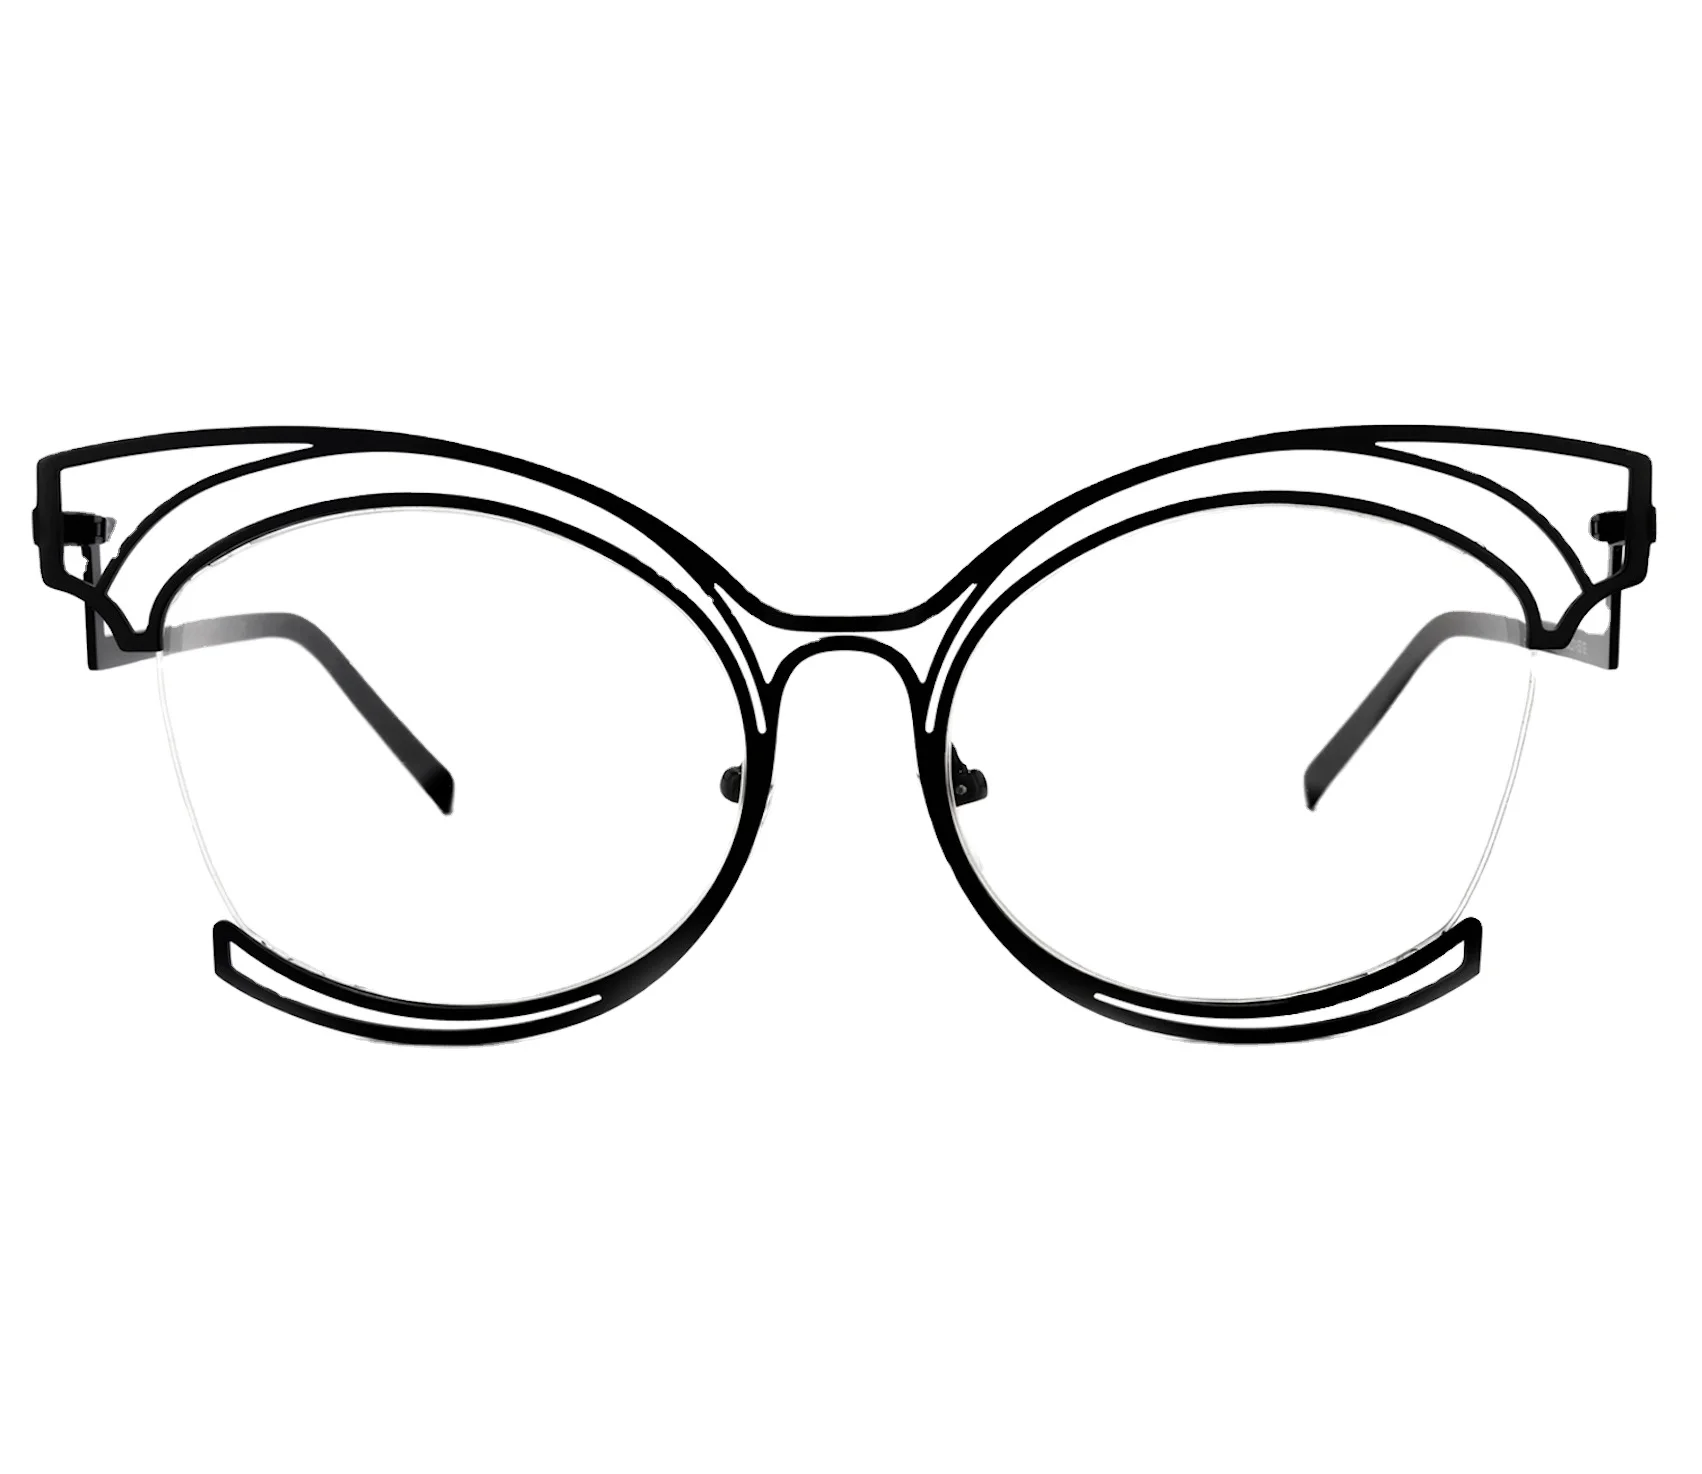 

2022 Zeelool Vooglam Brand hot sale Wholesale Eyewear cateye half frames black Metal Eyeglasses women Eyewear optical glasses